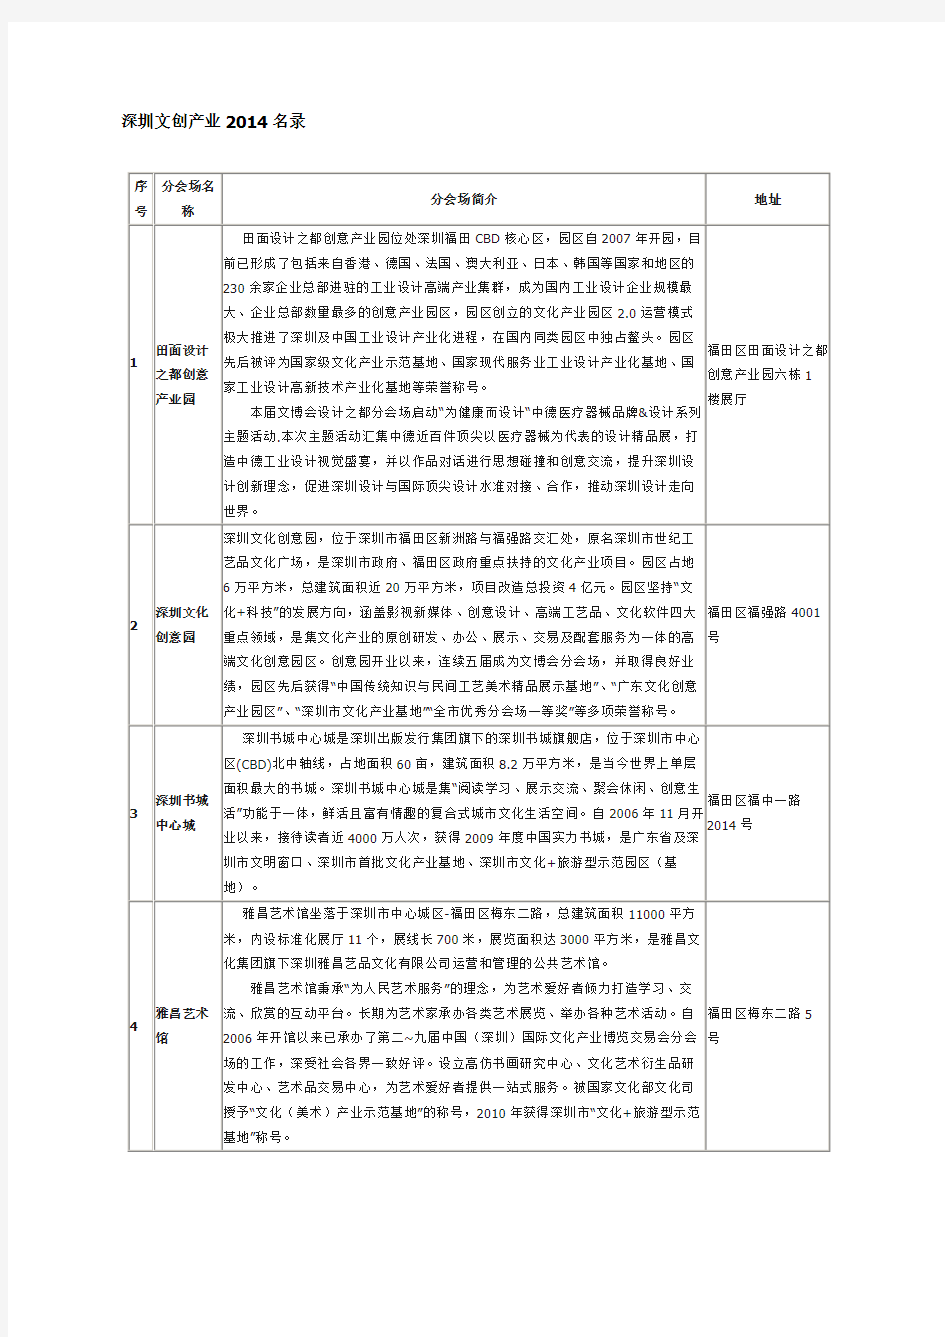 深圳文化创意产业园2014名录(全部)